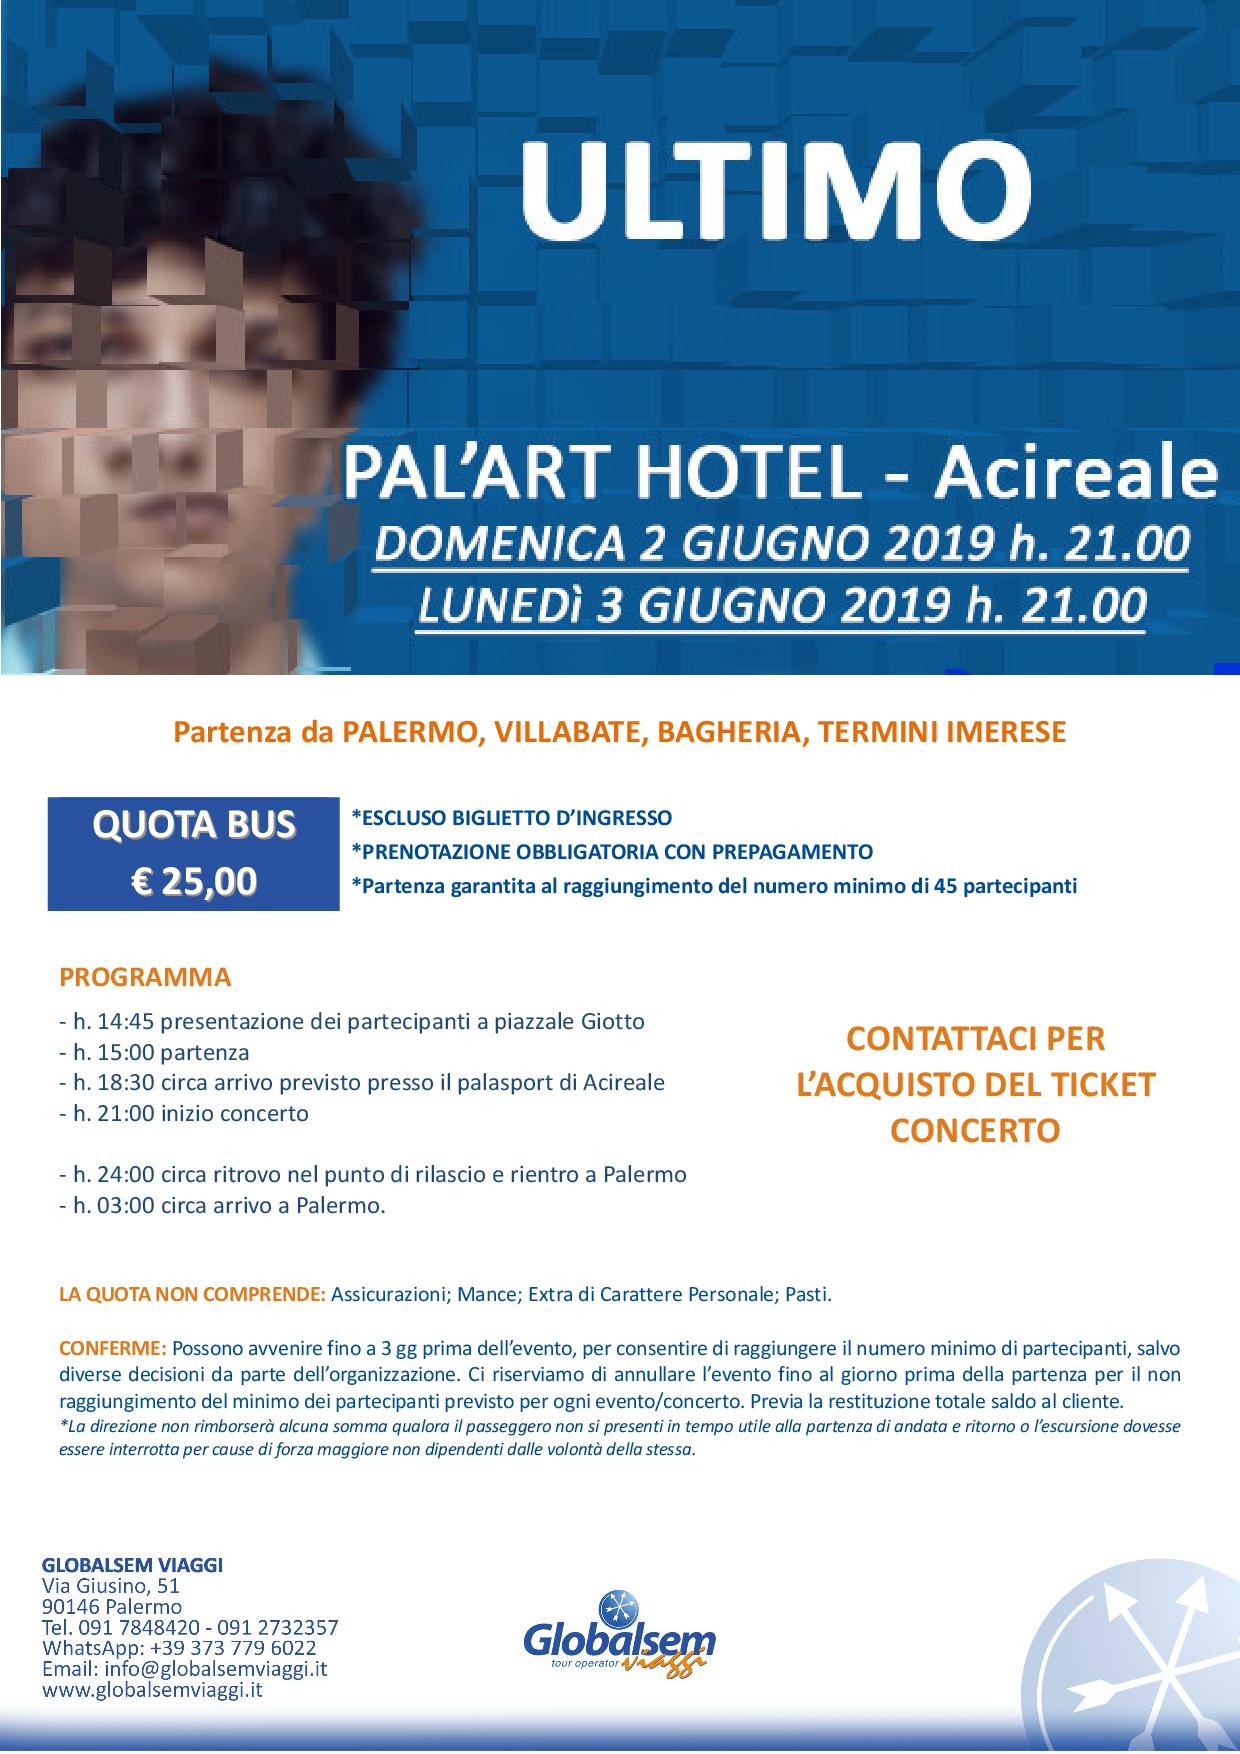 ULTIMO in CONCERTO giugno 2019 PALASPORT Acireale (CT) Pullman da Palermo